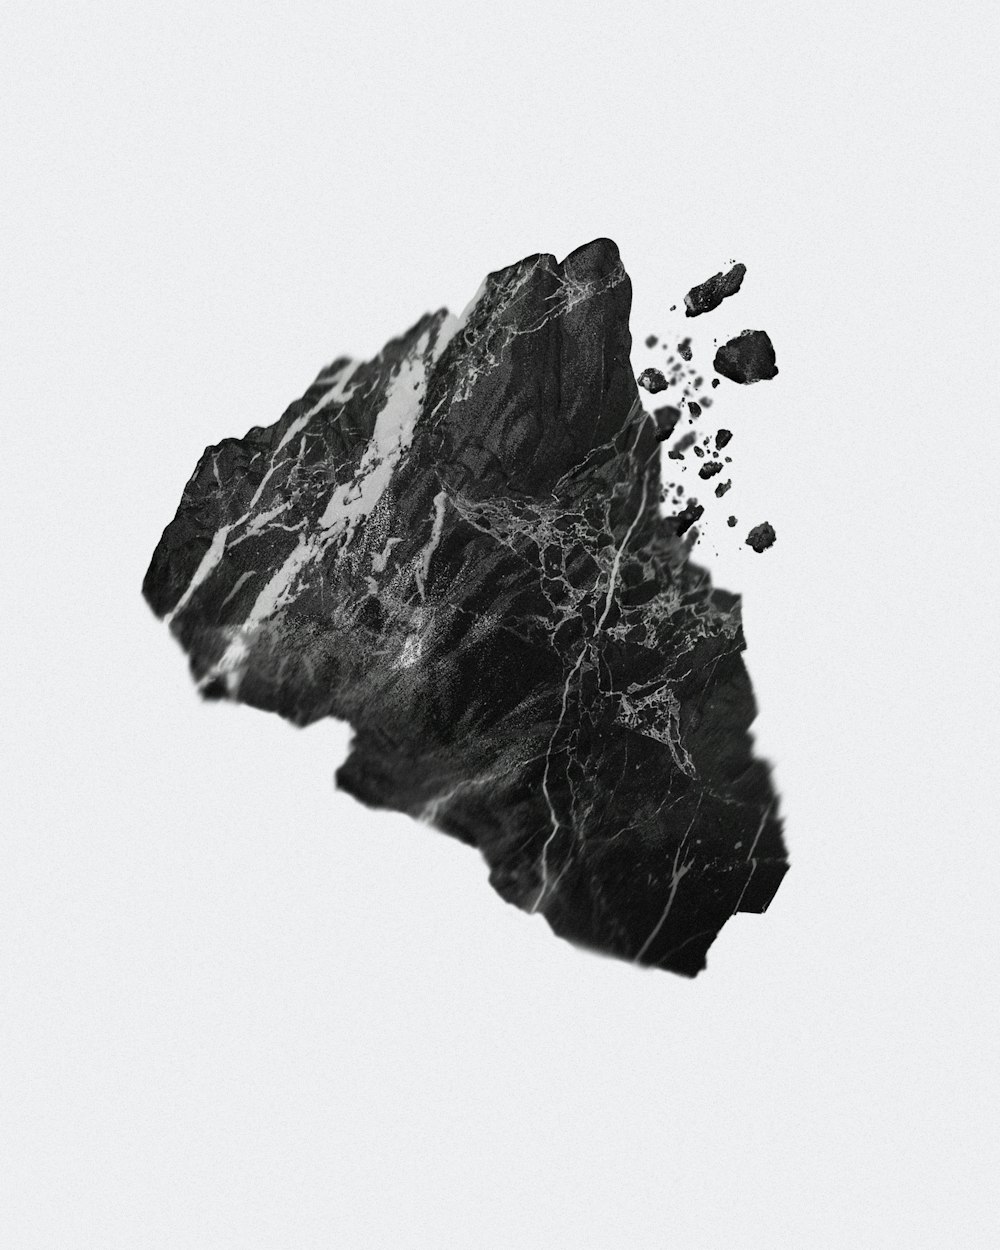 Un'immagine in bianco e nero di una roccia